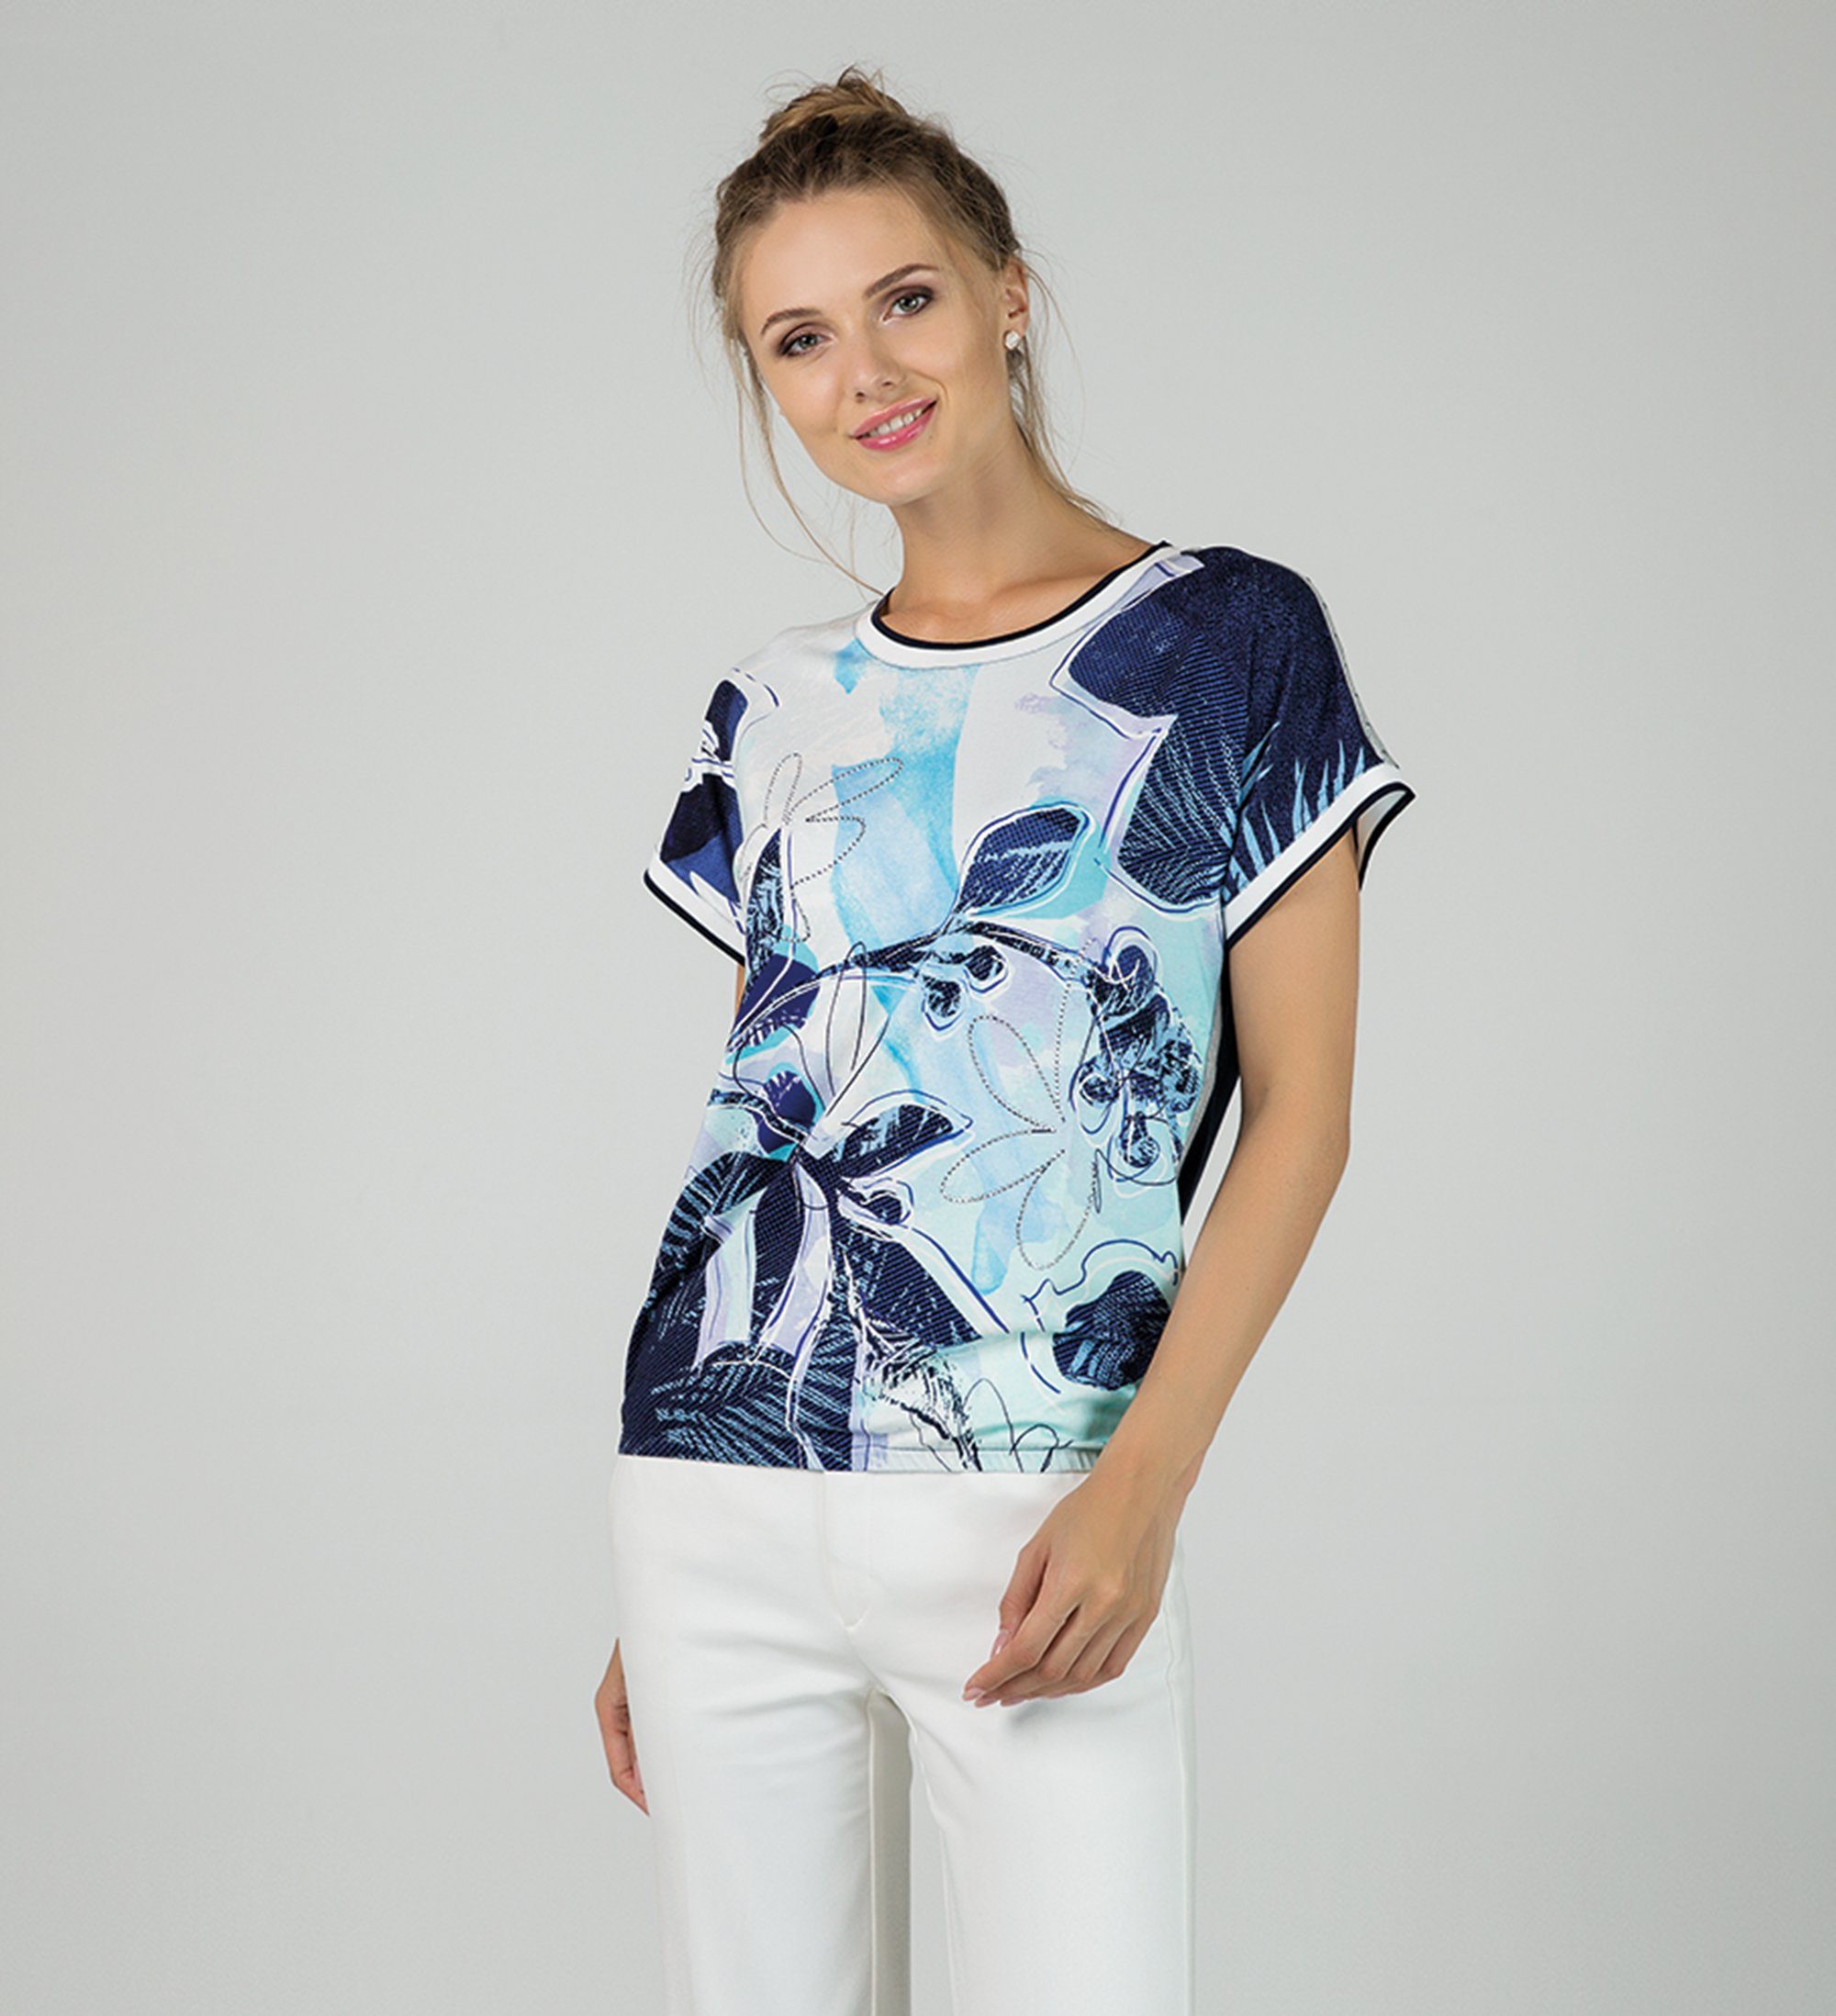 Passioni T-Shirt Bedrucktes T-Shirt in sommerlichen Blautönen Steindekoration, Hotfix, mit Print